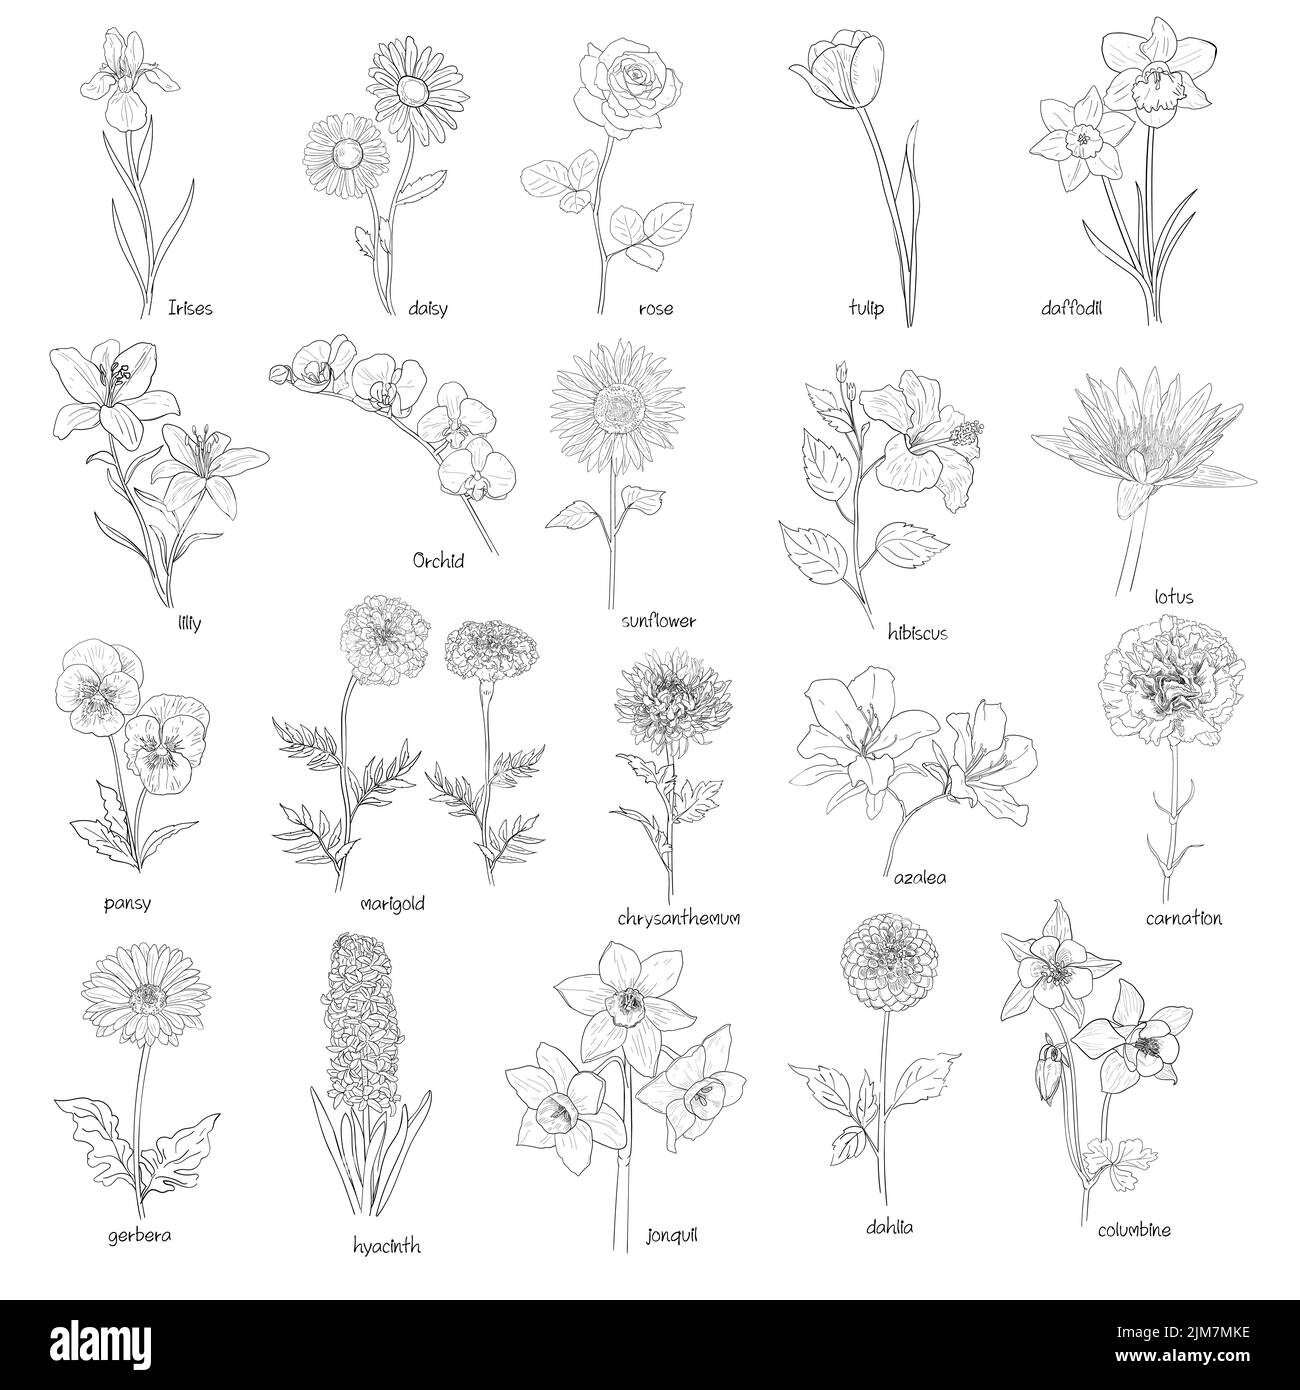 Flora-Set, handgezeichnete Blüten schwarz auf weiß, Vektorgrafik. Stock Vektor